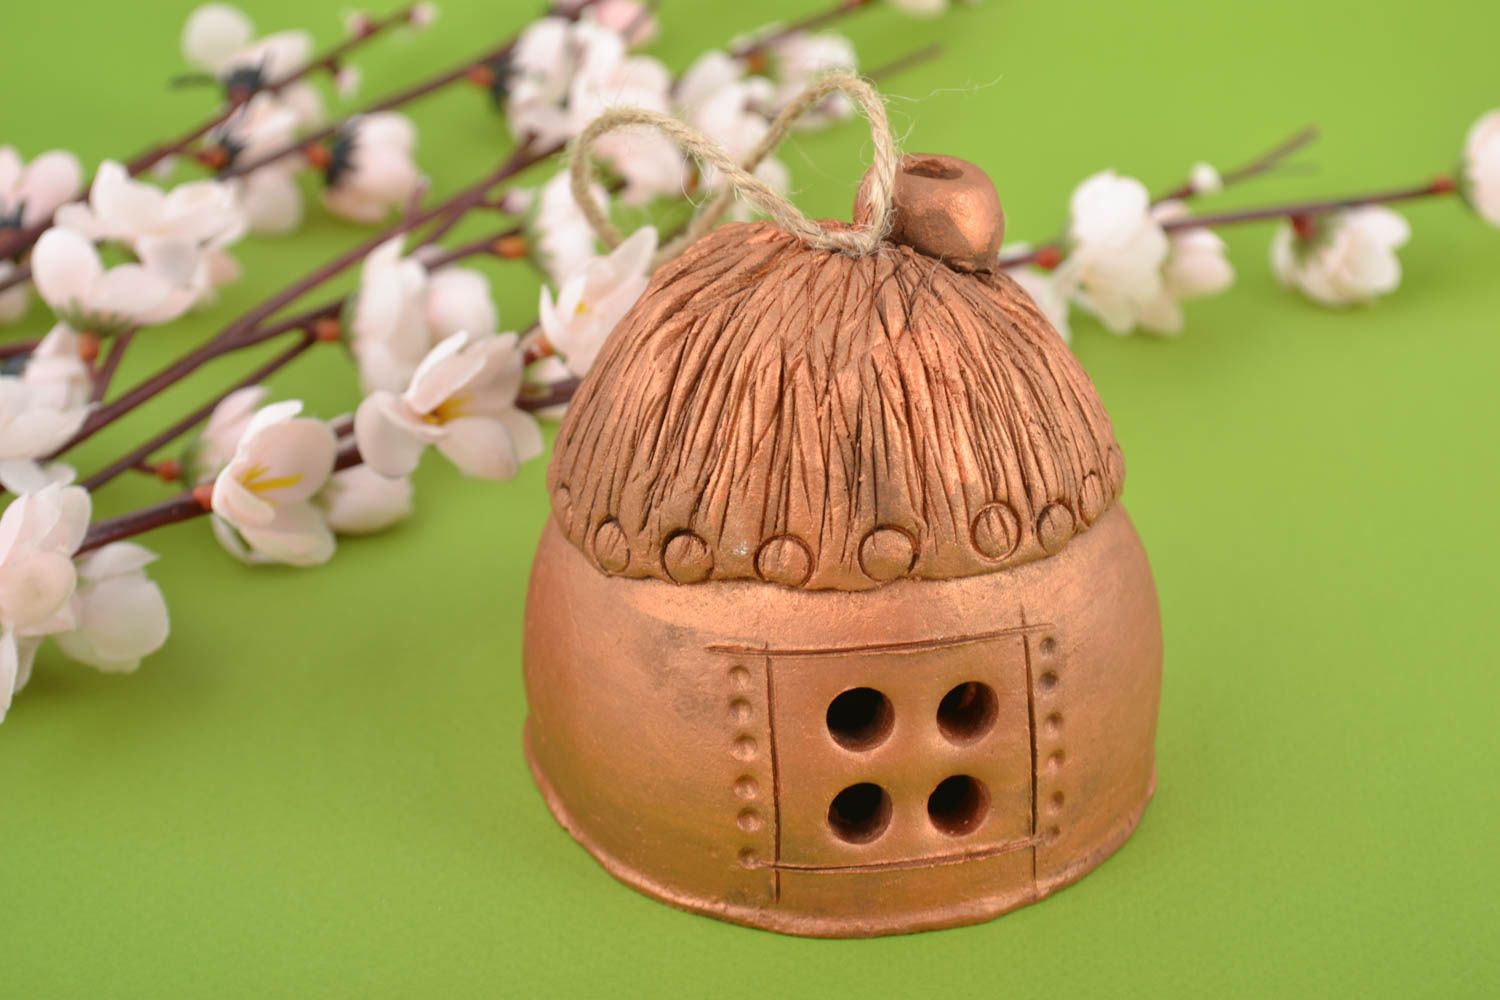 Керамический колокольчик домик сувенир ручной работы фигурка из глины  фото 1